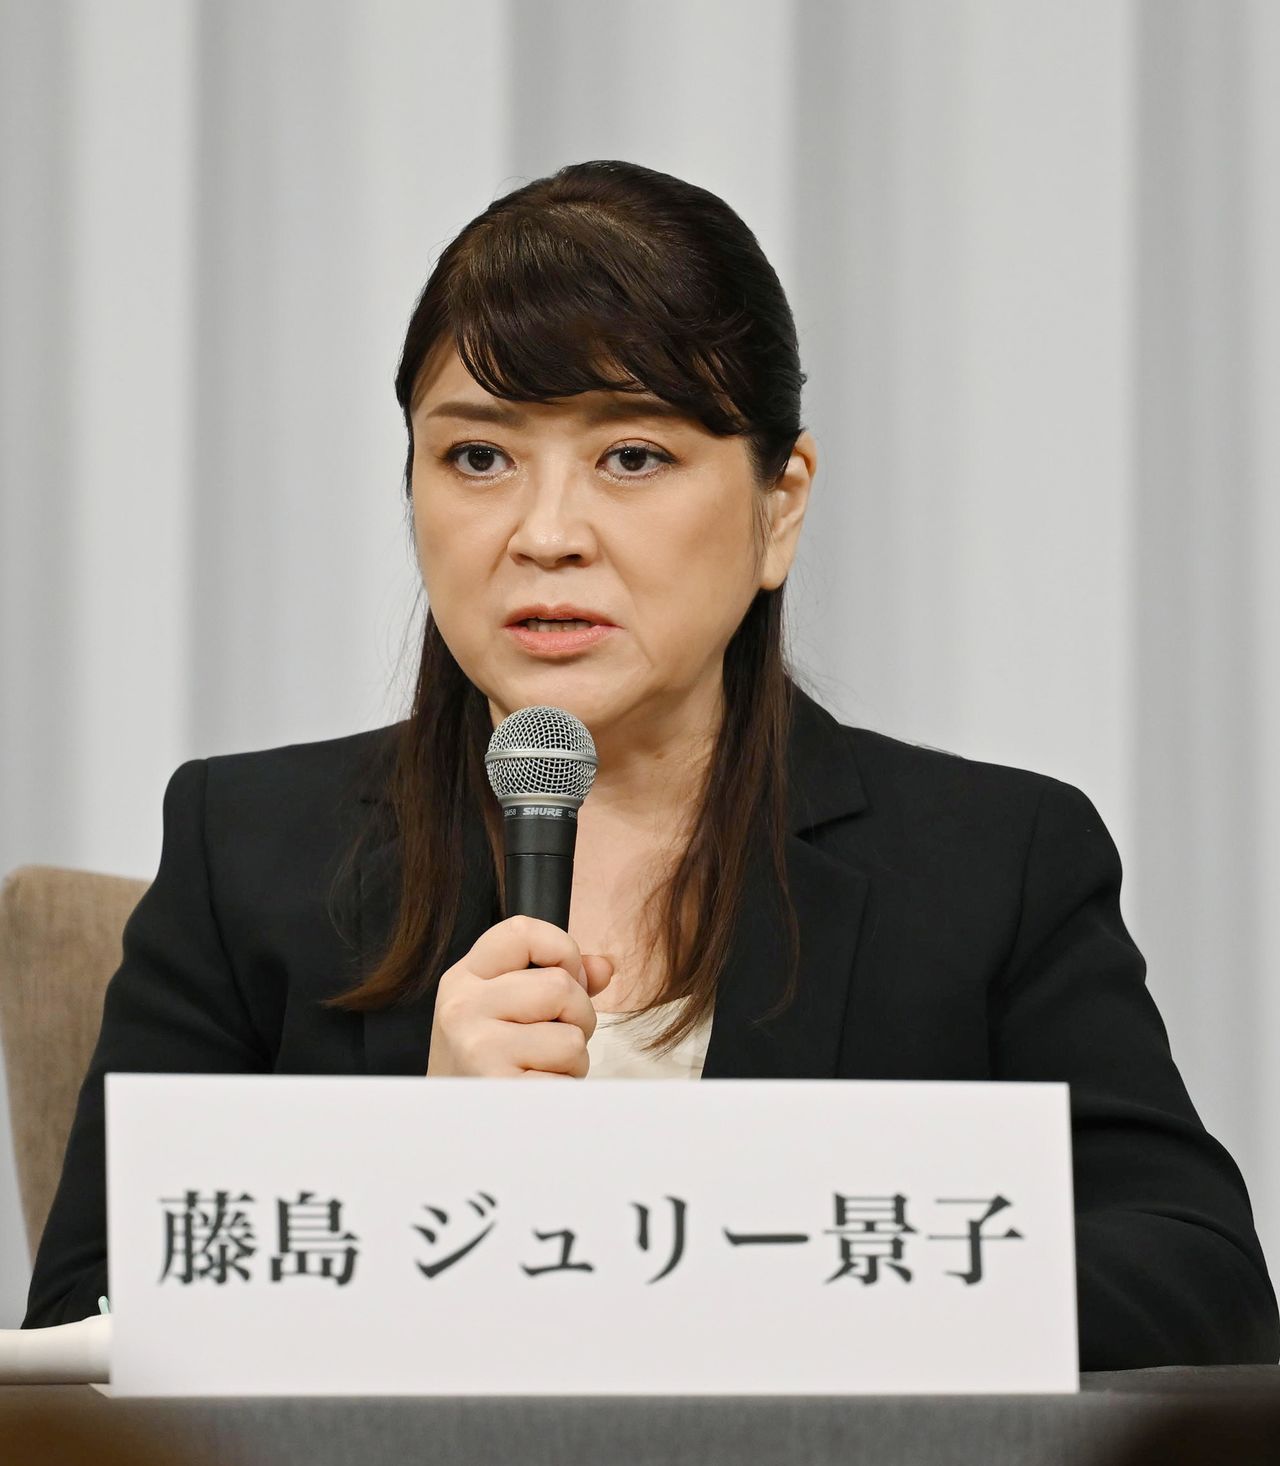 جولي فوجيشيما في المؤتمر الصحفي الذي عُقد بطوكيو في السابع من سبتمبر/ أيلول 2023. (© جيجي برس)